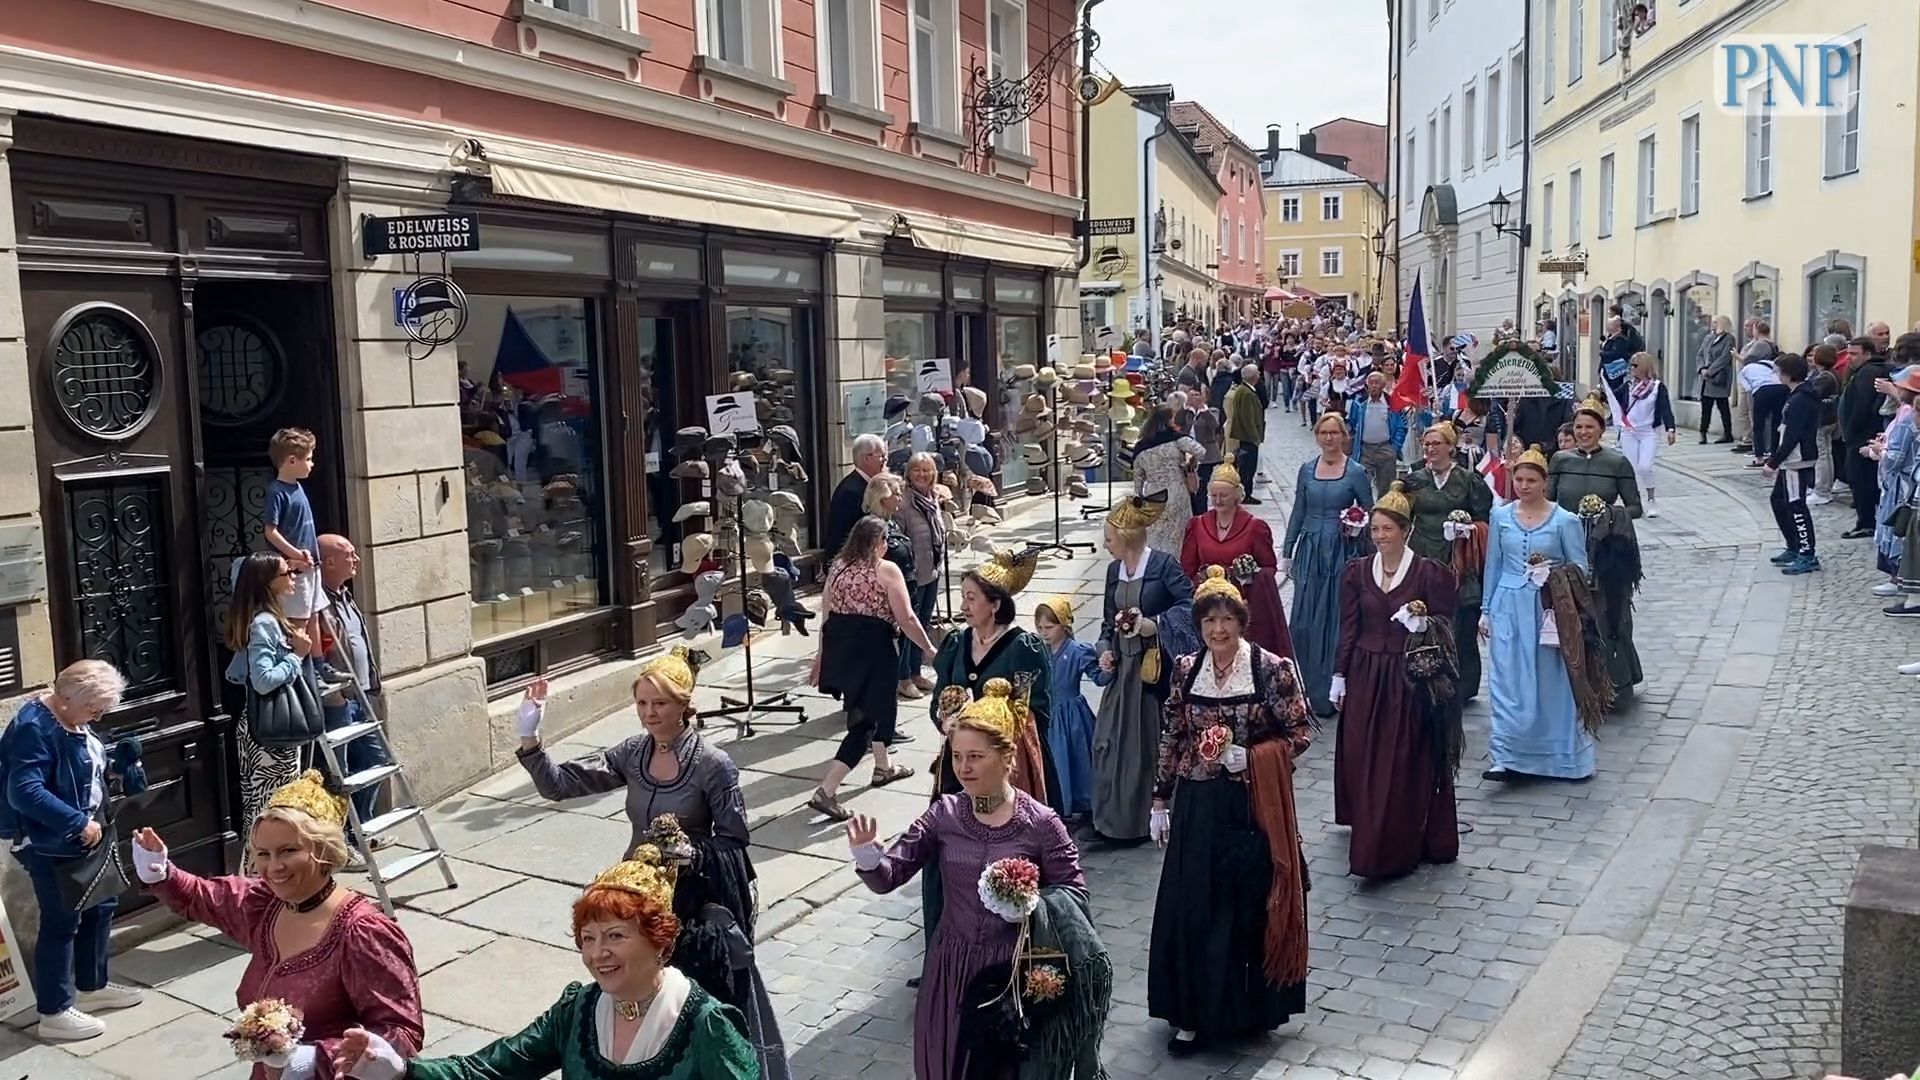 Maidult parade in Passau